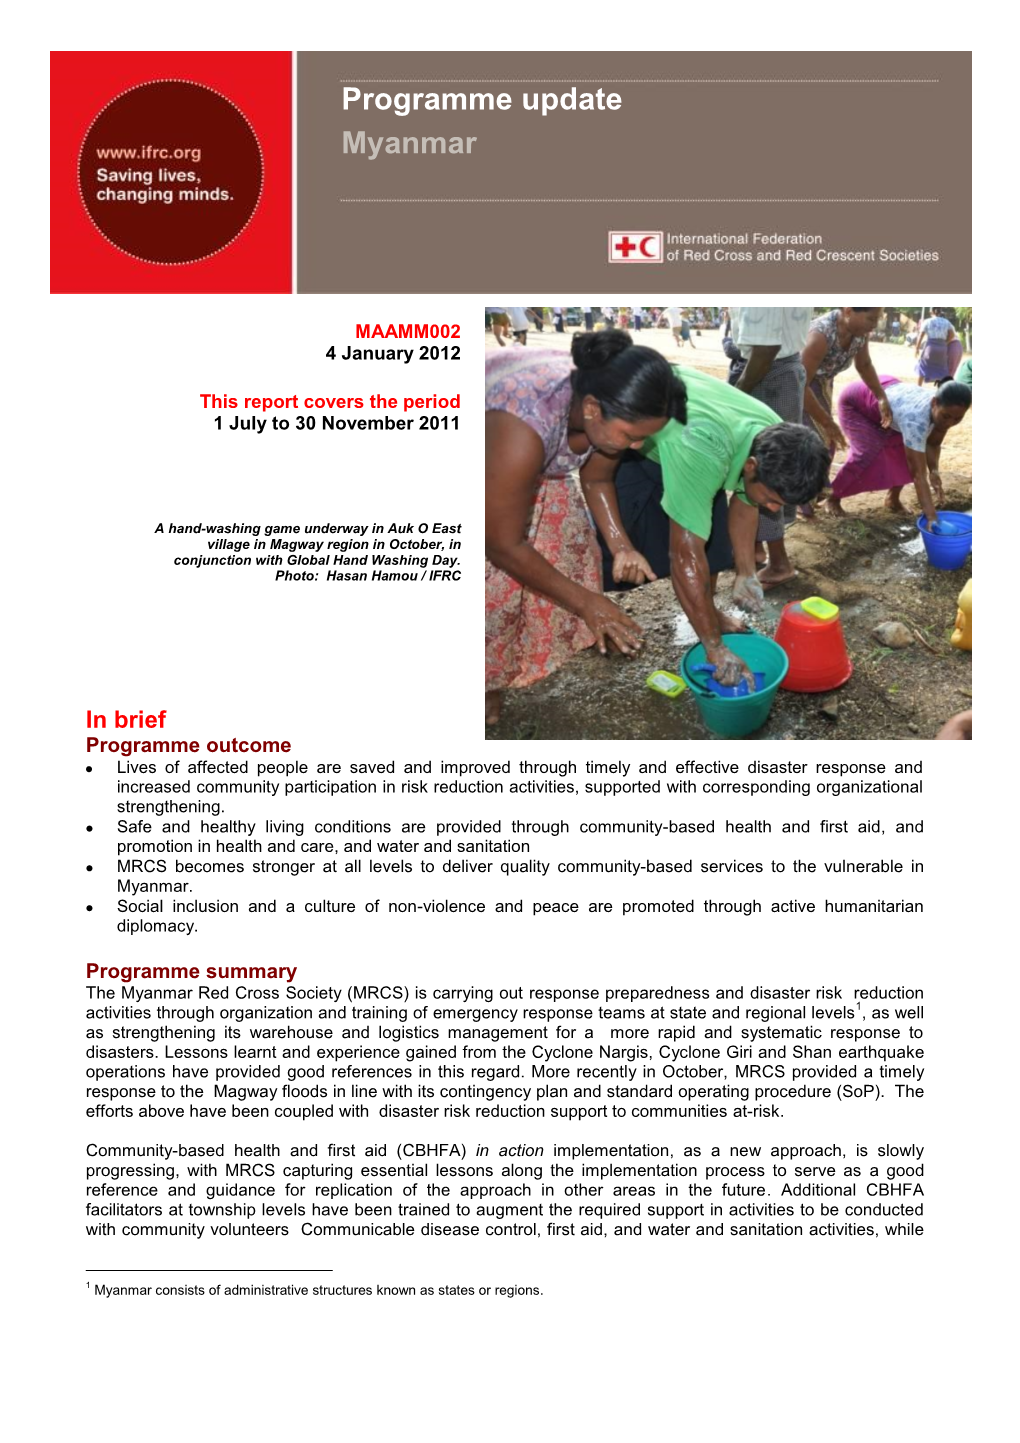 Programme Update Myanmar